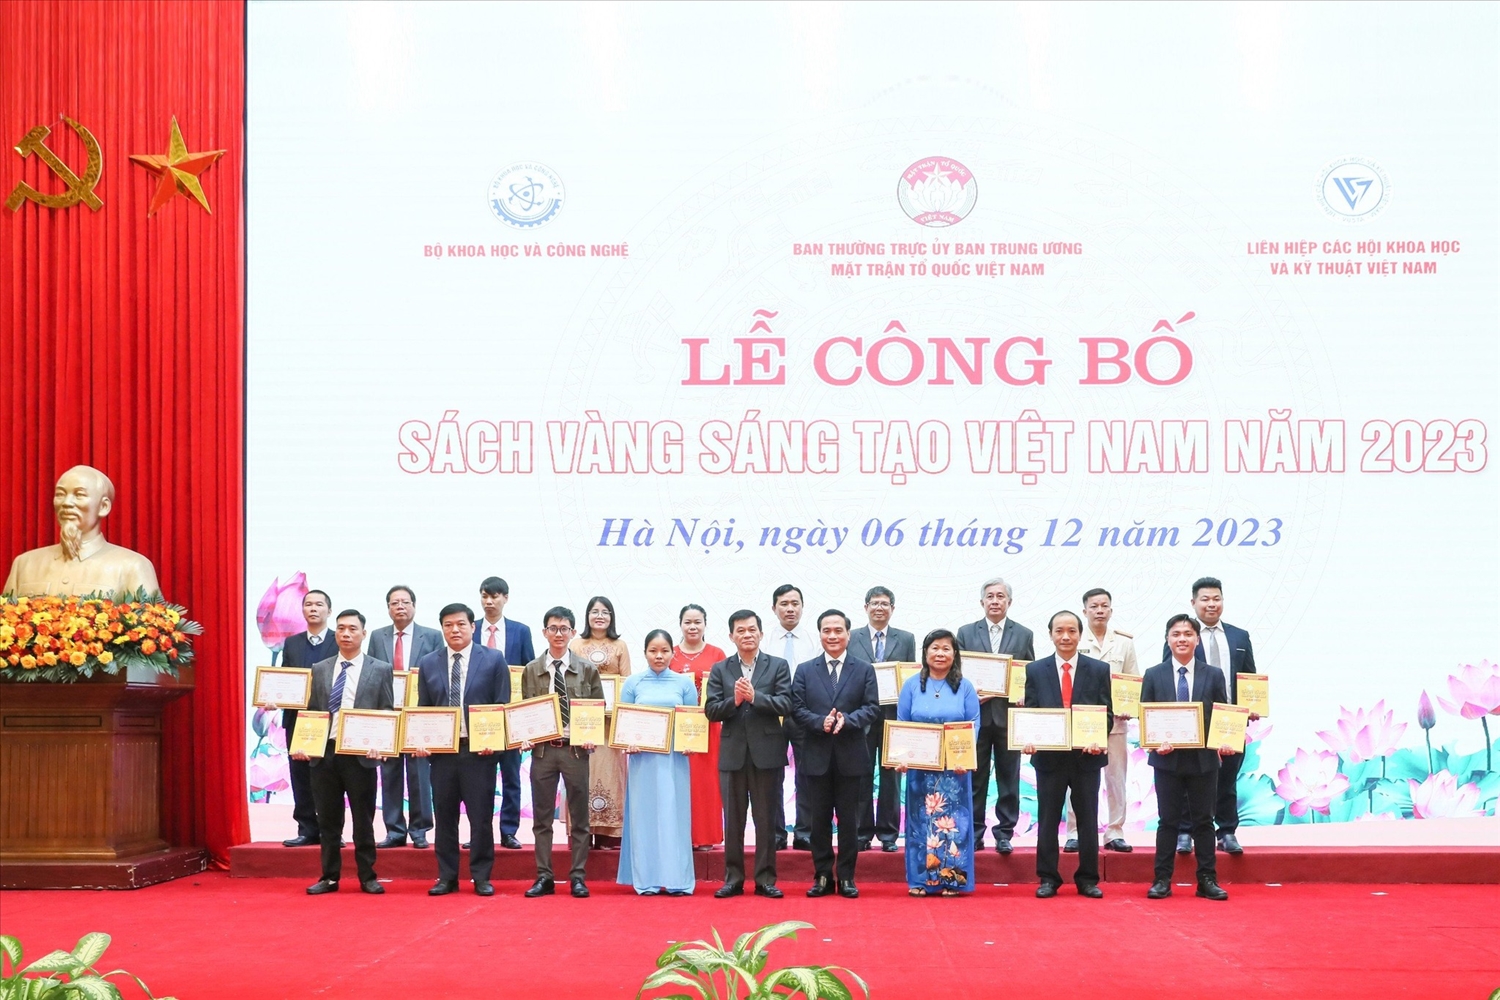 Lãnh đạo Ủy ban Dân tộc và Liên hiệp các Hội Khoa học Kỹ thuật Việt Nam trao Chứng nhận và Sách vàng Sáng tạo Việt Nam năm 2023 cho các tác giả